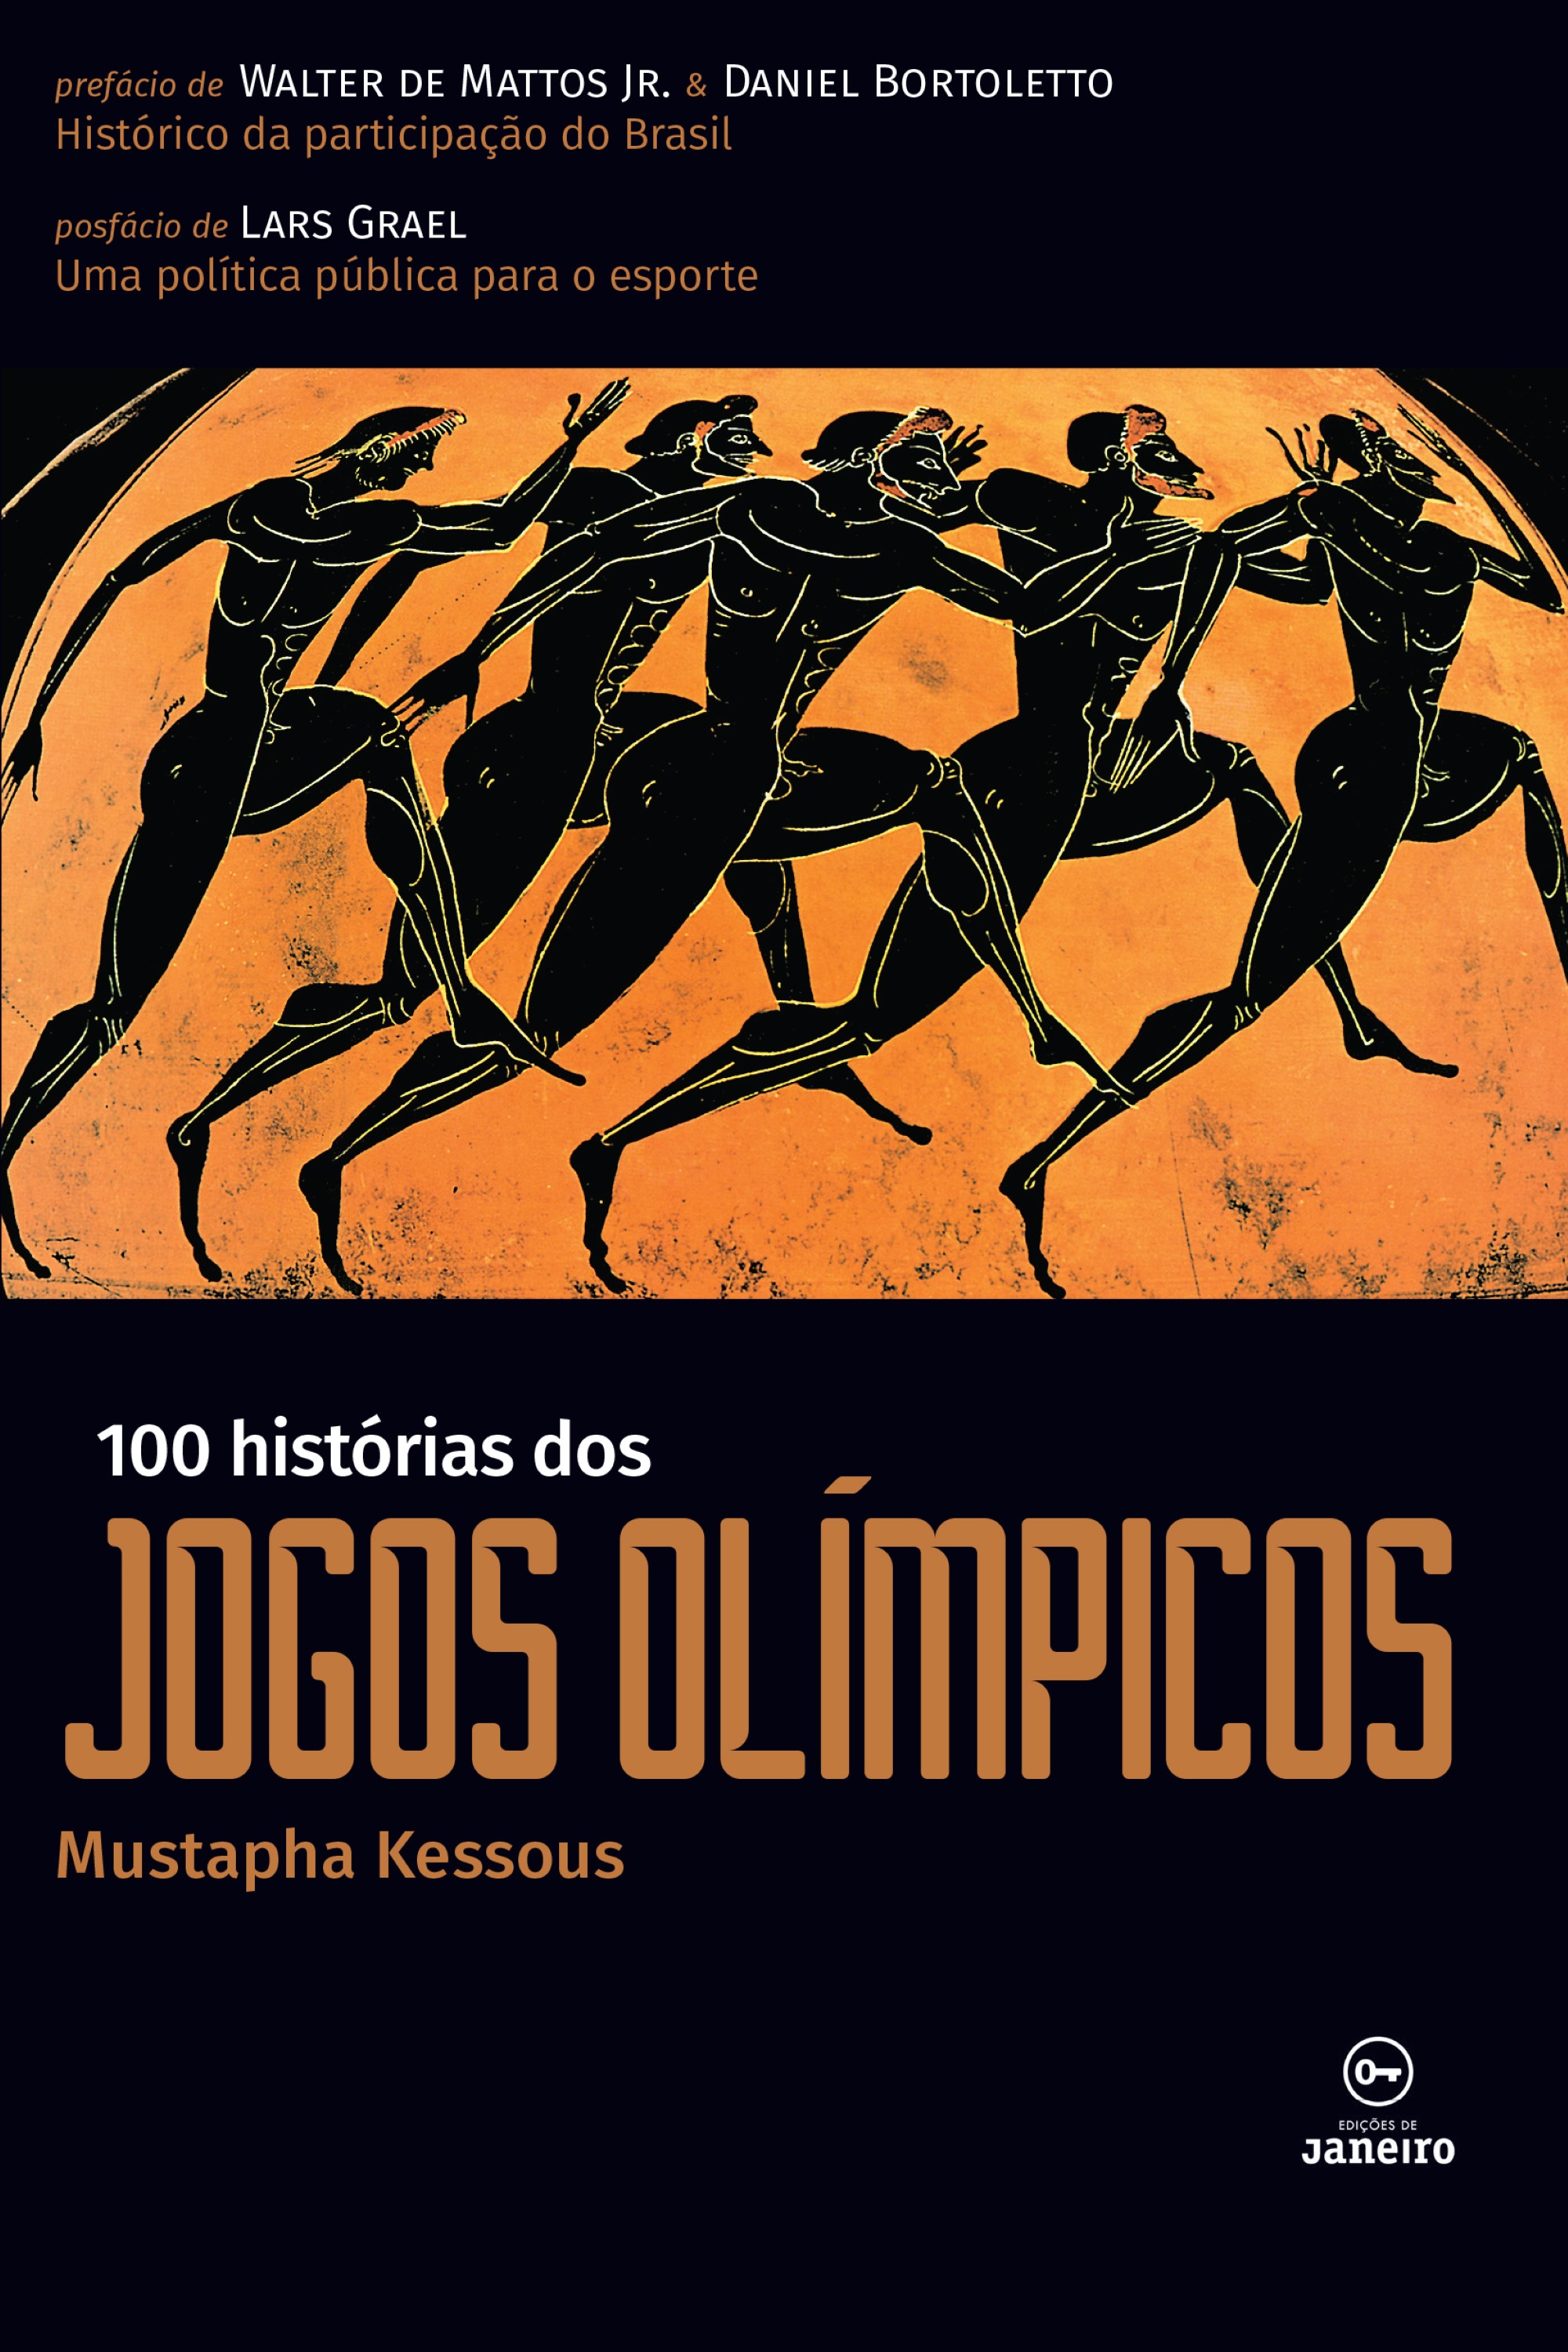 100 histórias dos jogos olímpicos